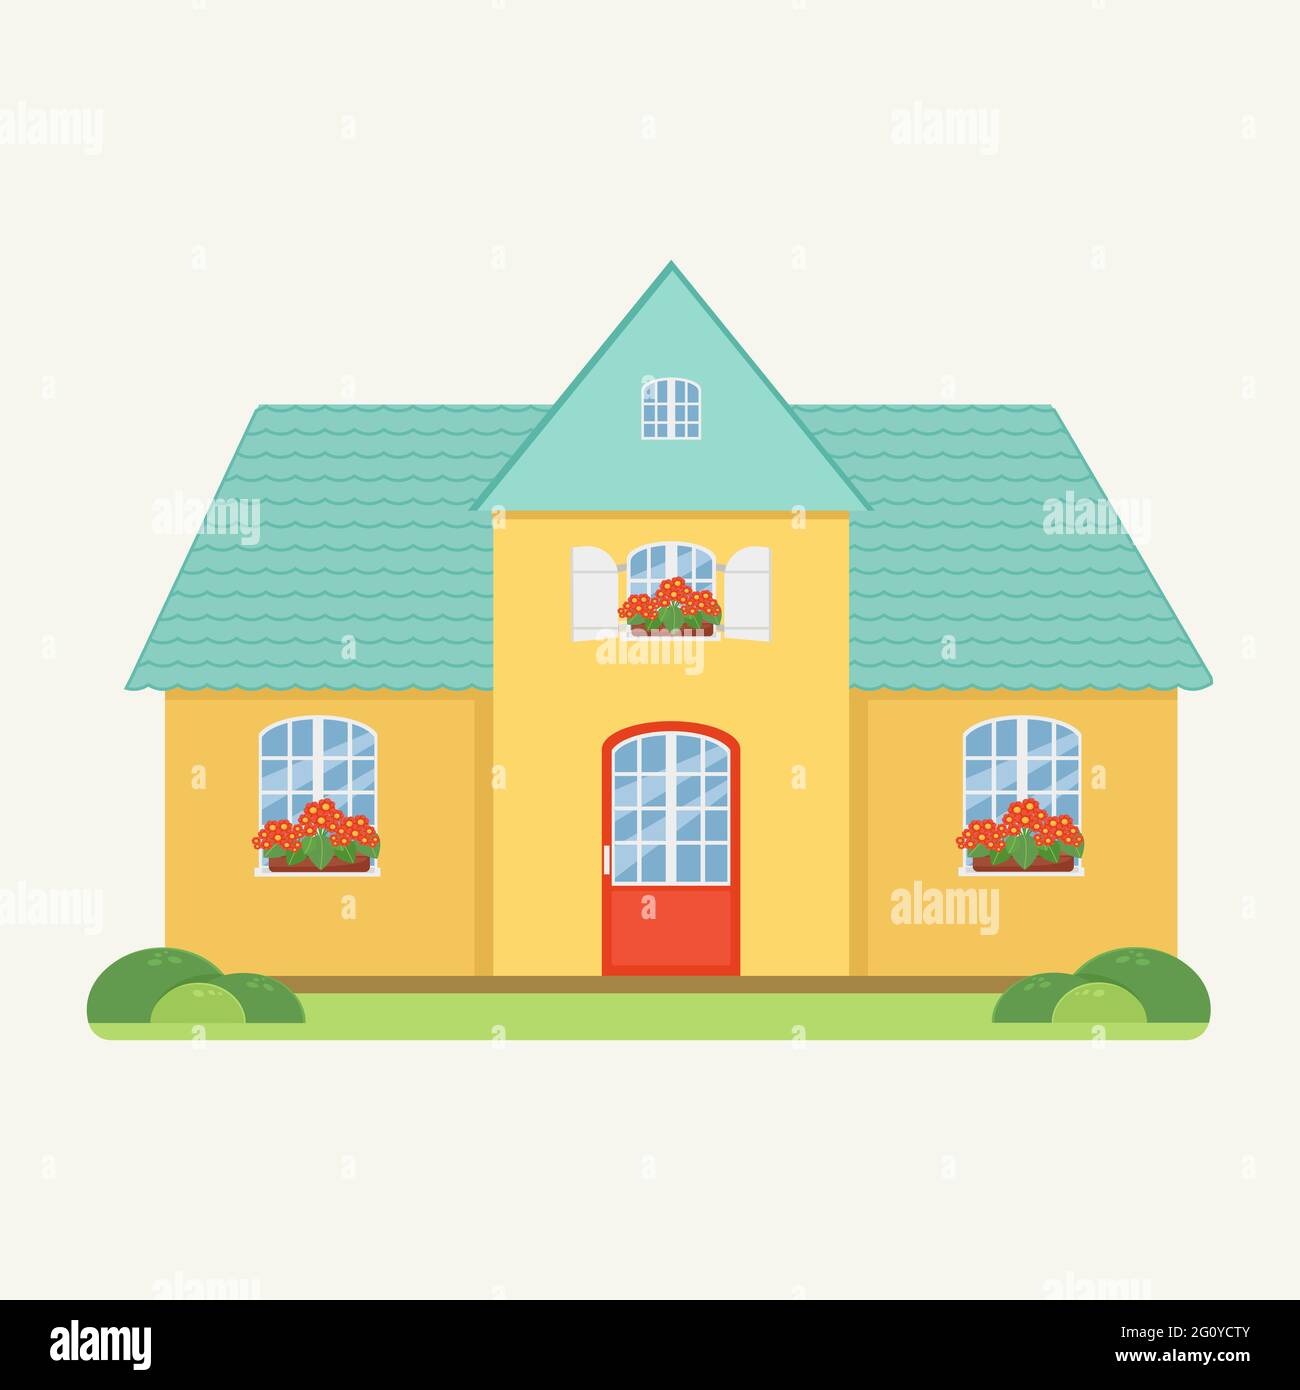 Maison familiale de style plat, maison jaune avec toit turquoise, fleurs rouges sur le rebord de la fenêtre Illustration de Vecteur